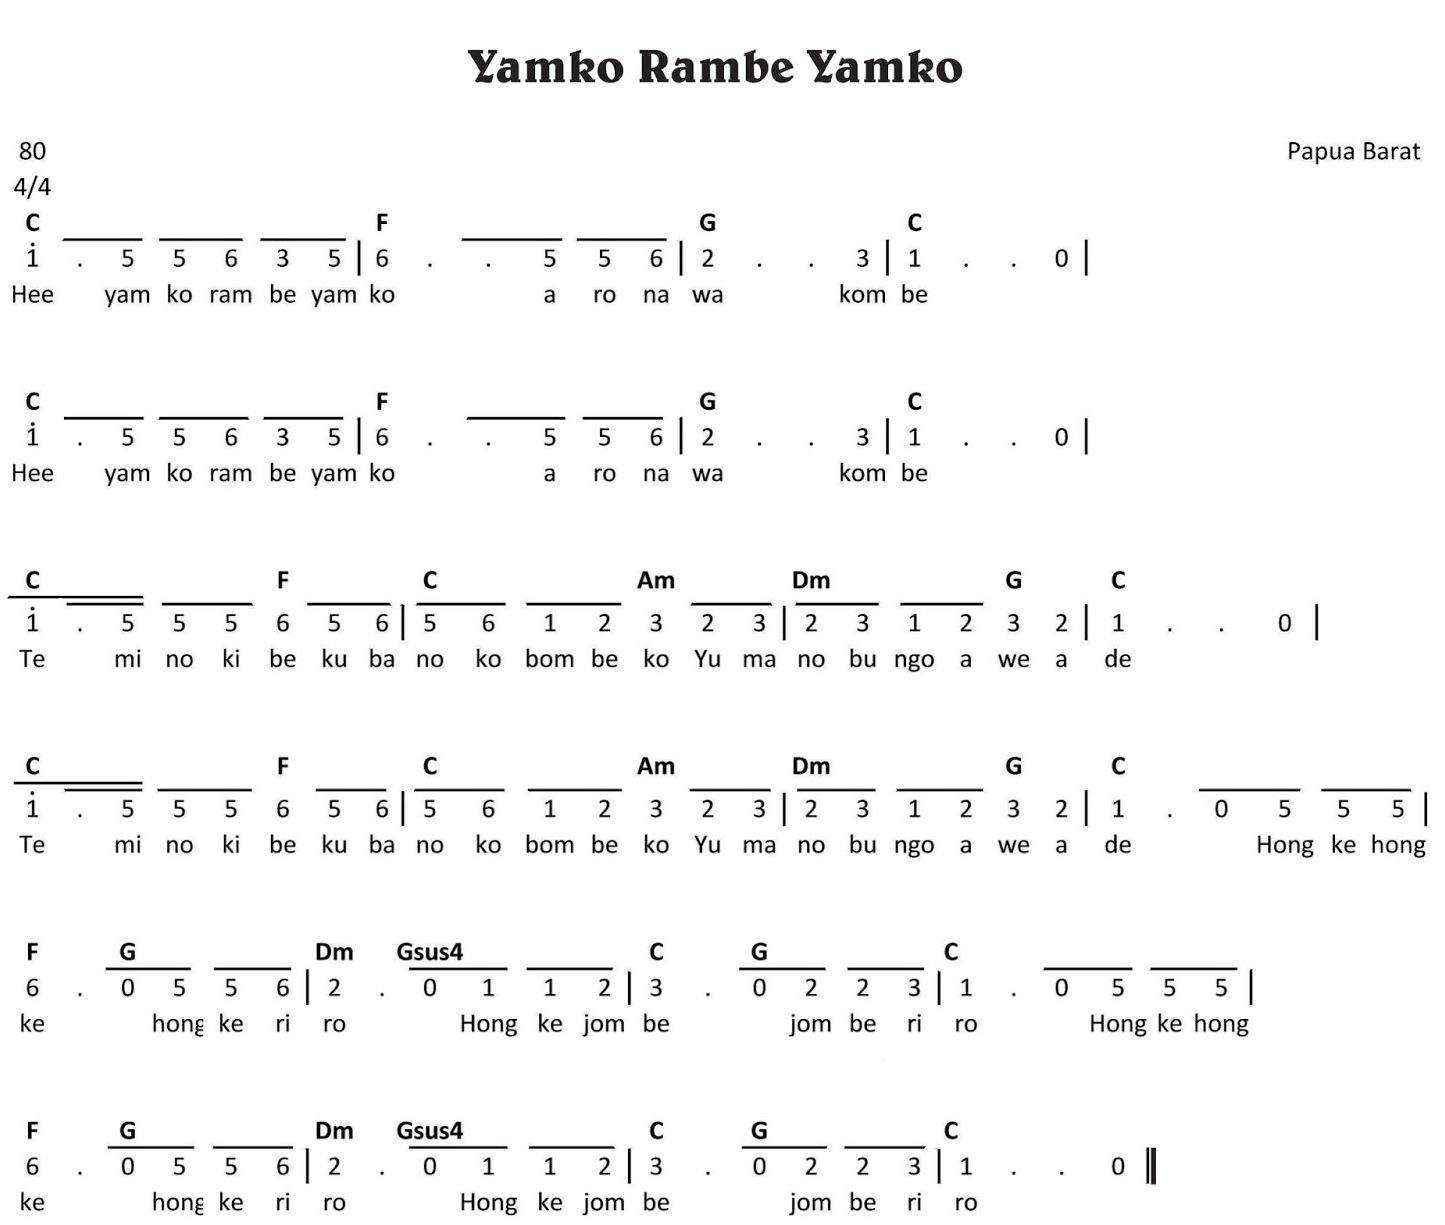 Not Lagu Yamko Rambe Yamko